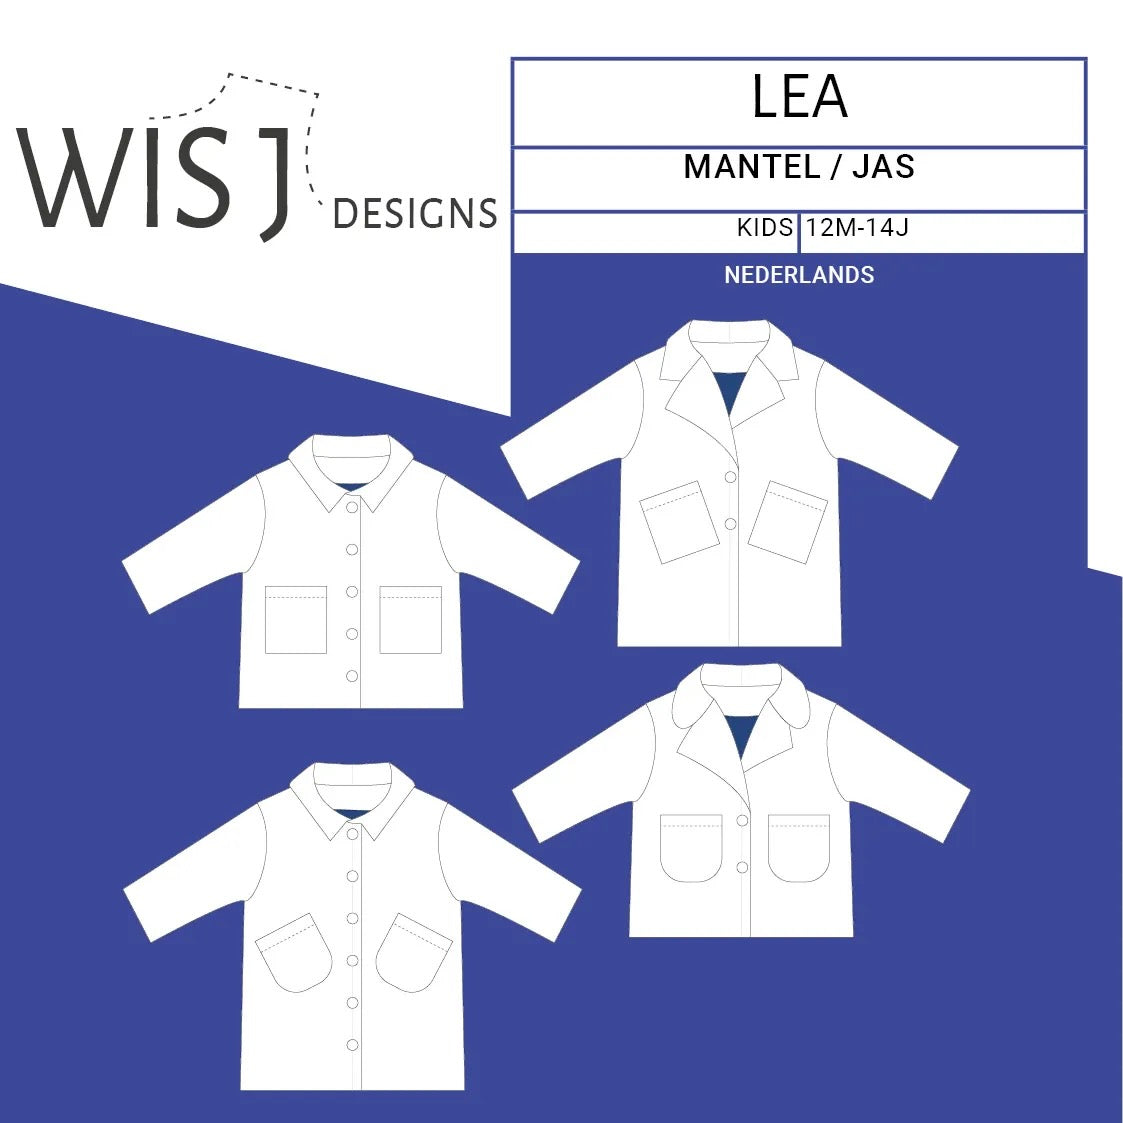 WISJ designs Lea